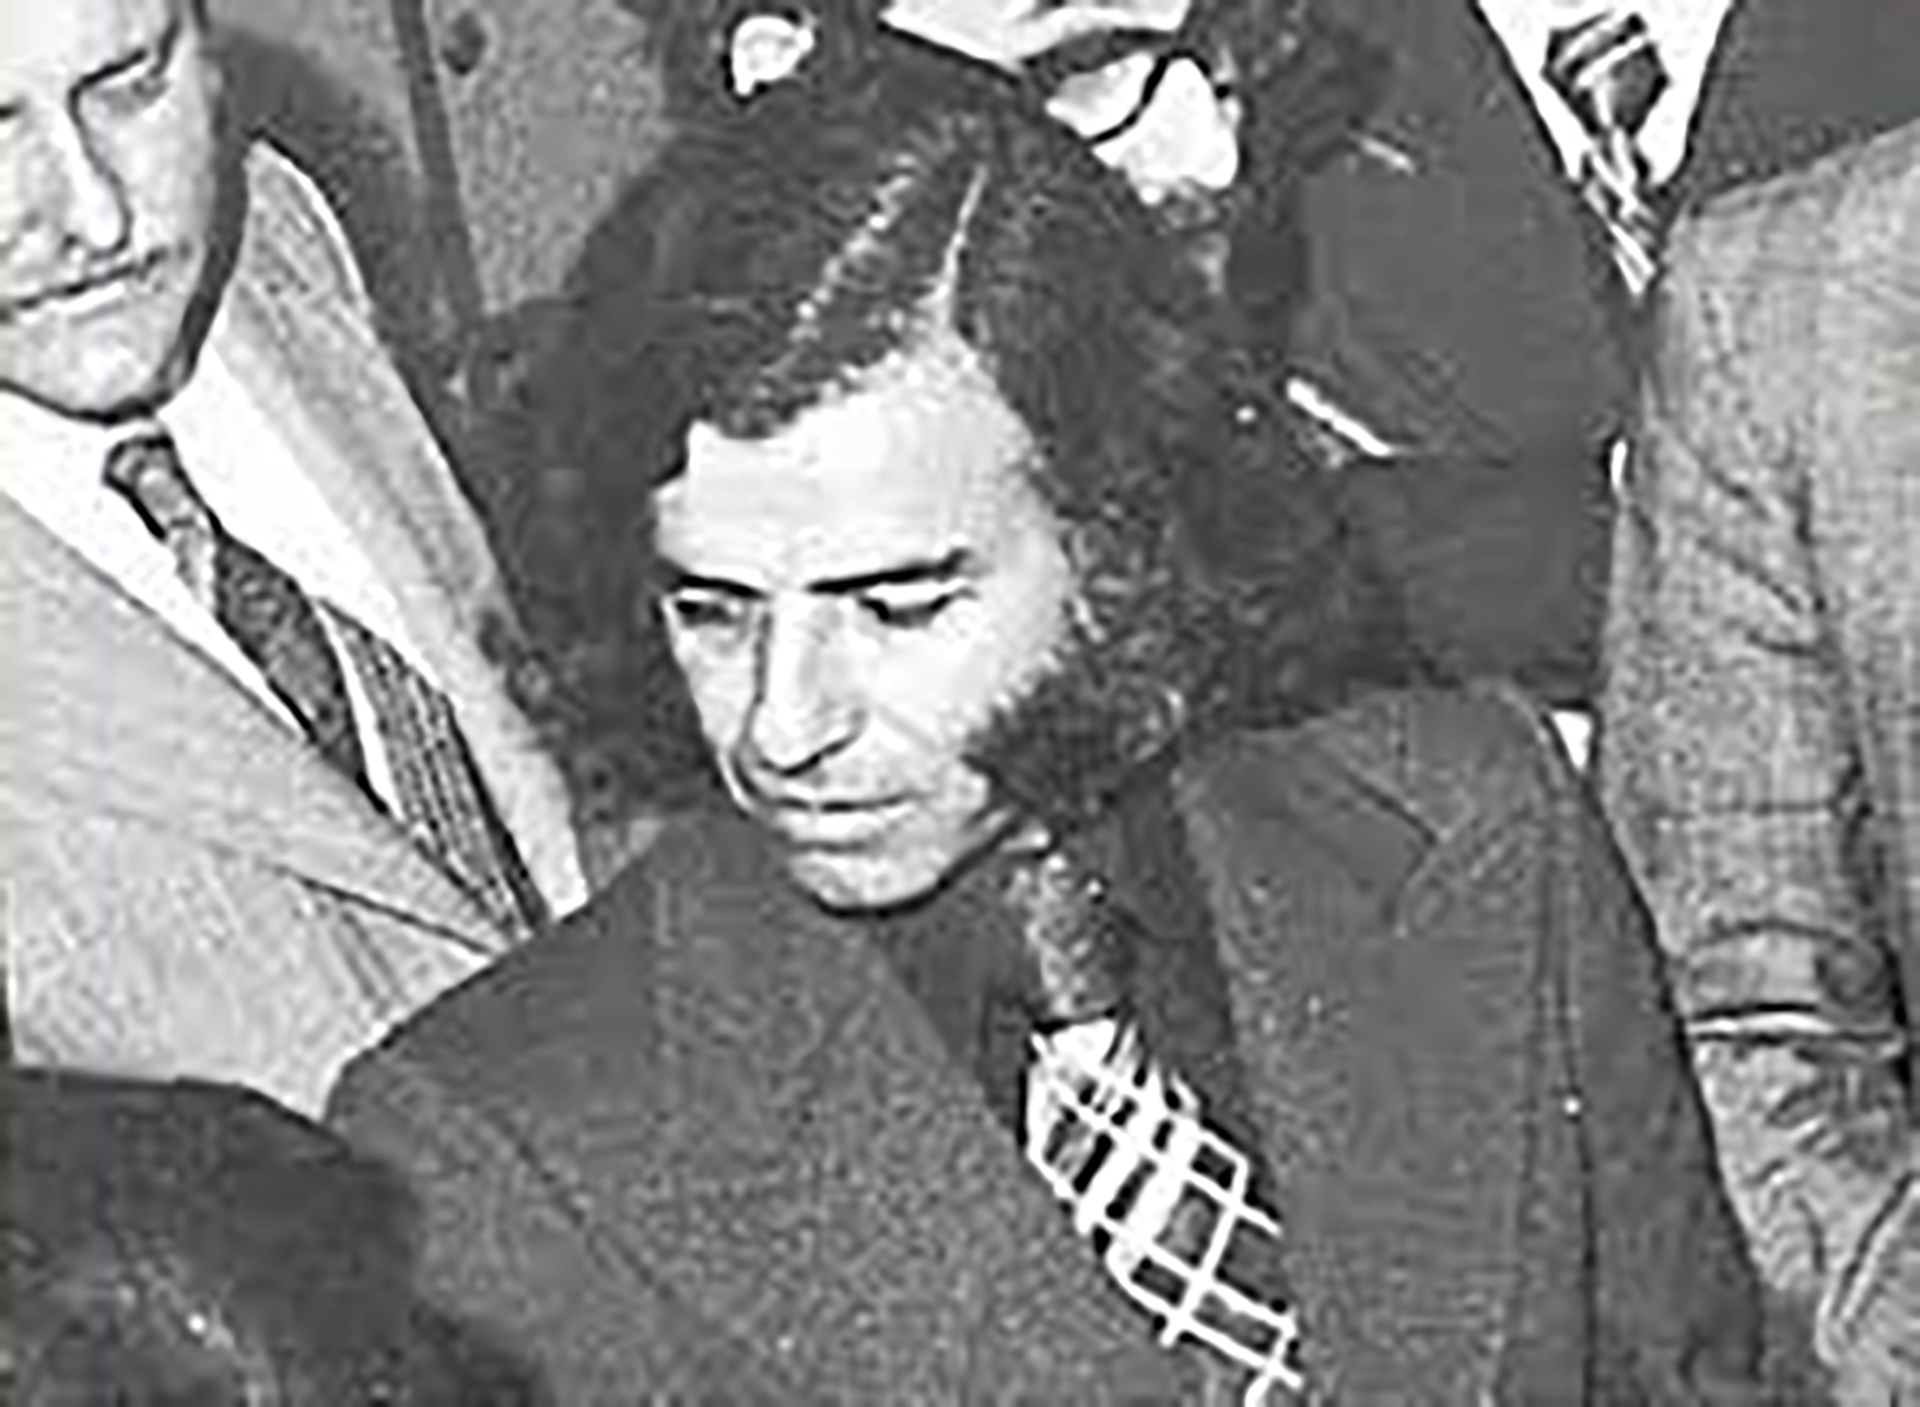 Abogado, recibido en la Universidad Nacional de Córdoba, Carlos Saúl Menem cobró por primera vez notoriedad pública al defender a presos políticos durante el gobierno de facto de Pedro Eugenio Aramburu, tras el golpe de estado de 1955